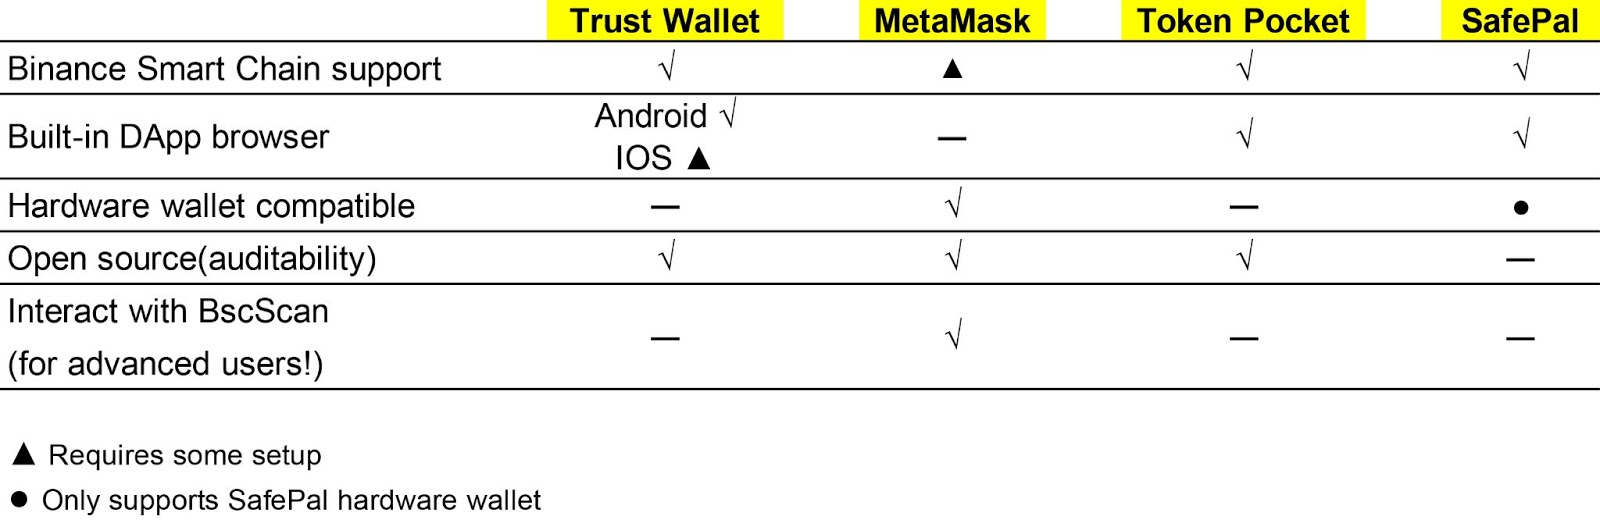 Wallets Compare: Mobile